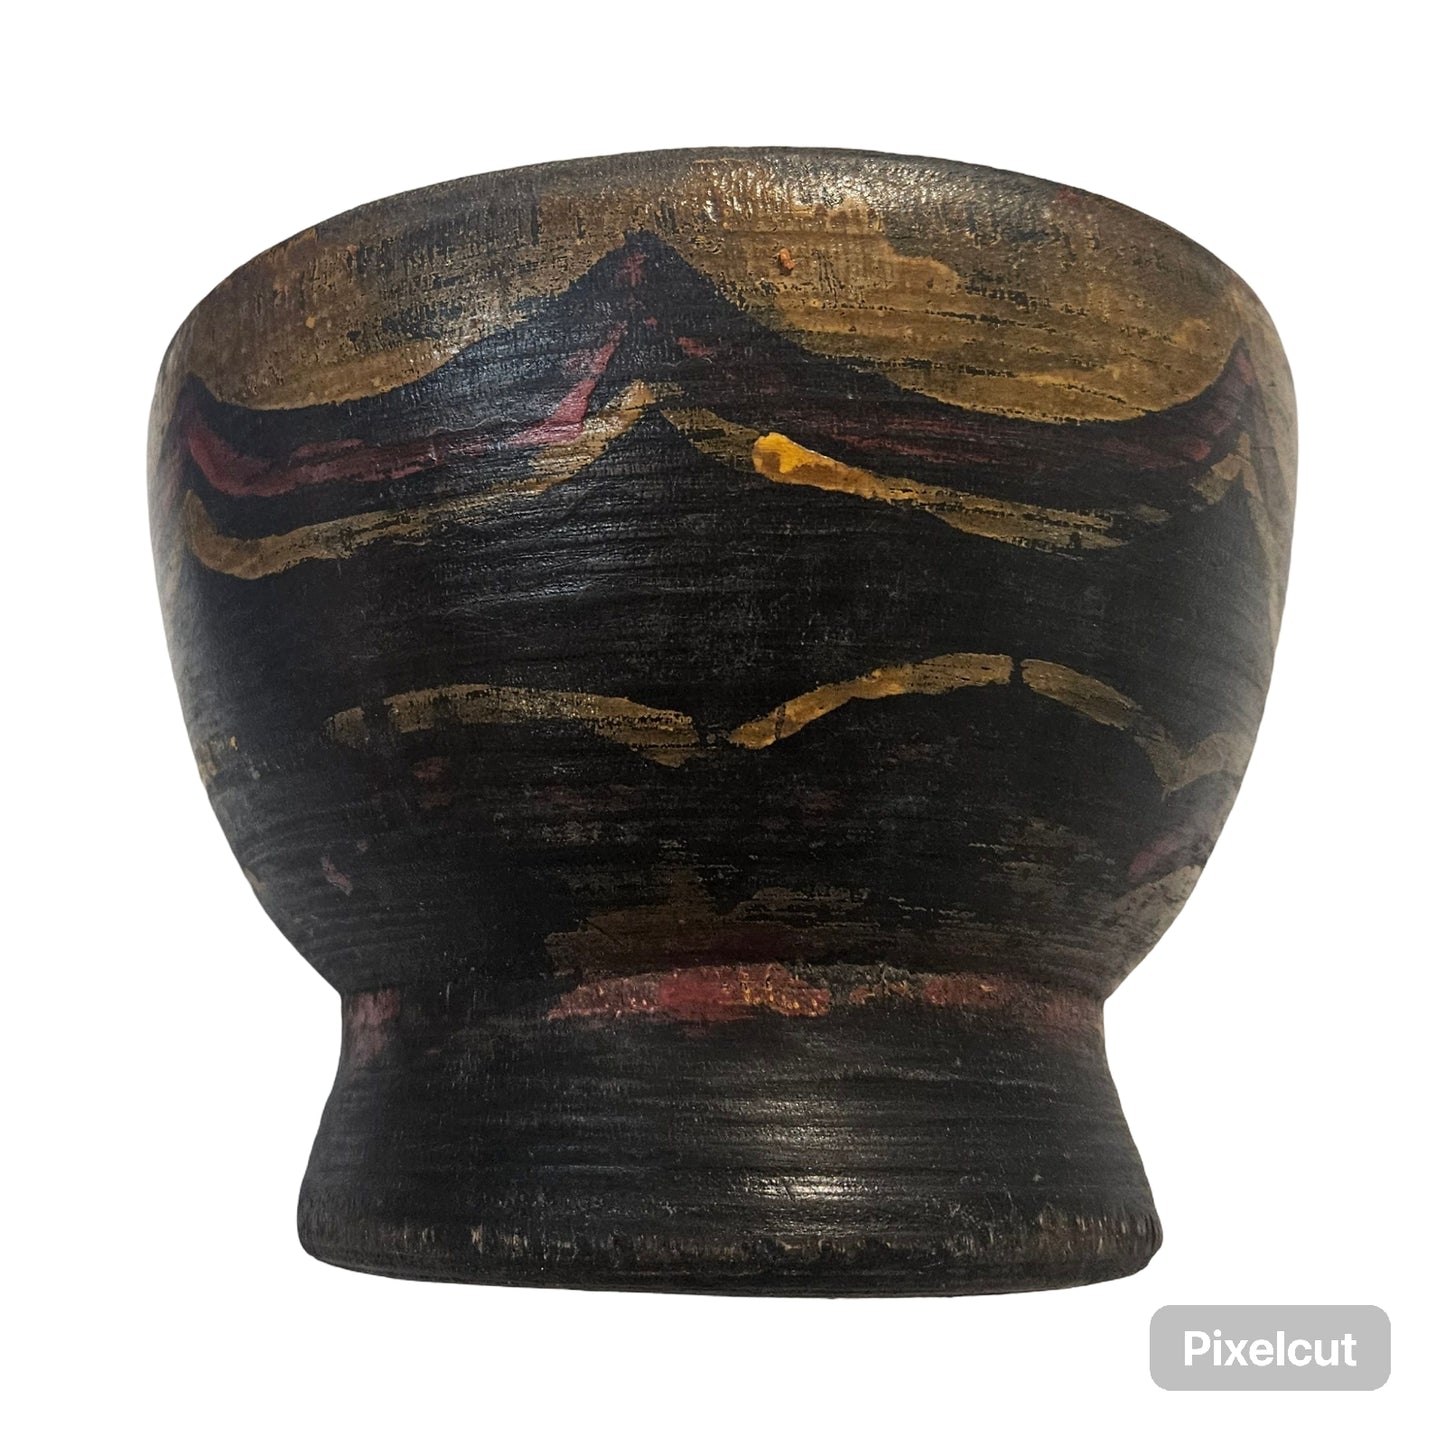 Tibetan Woodenware Prayer Bowl 6" dia